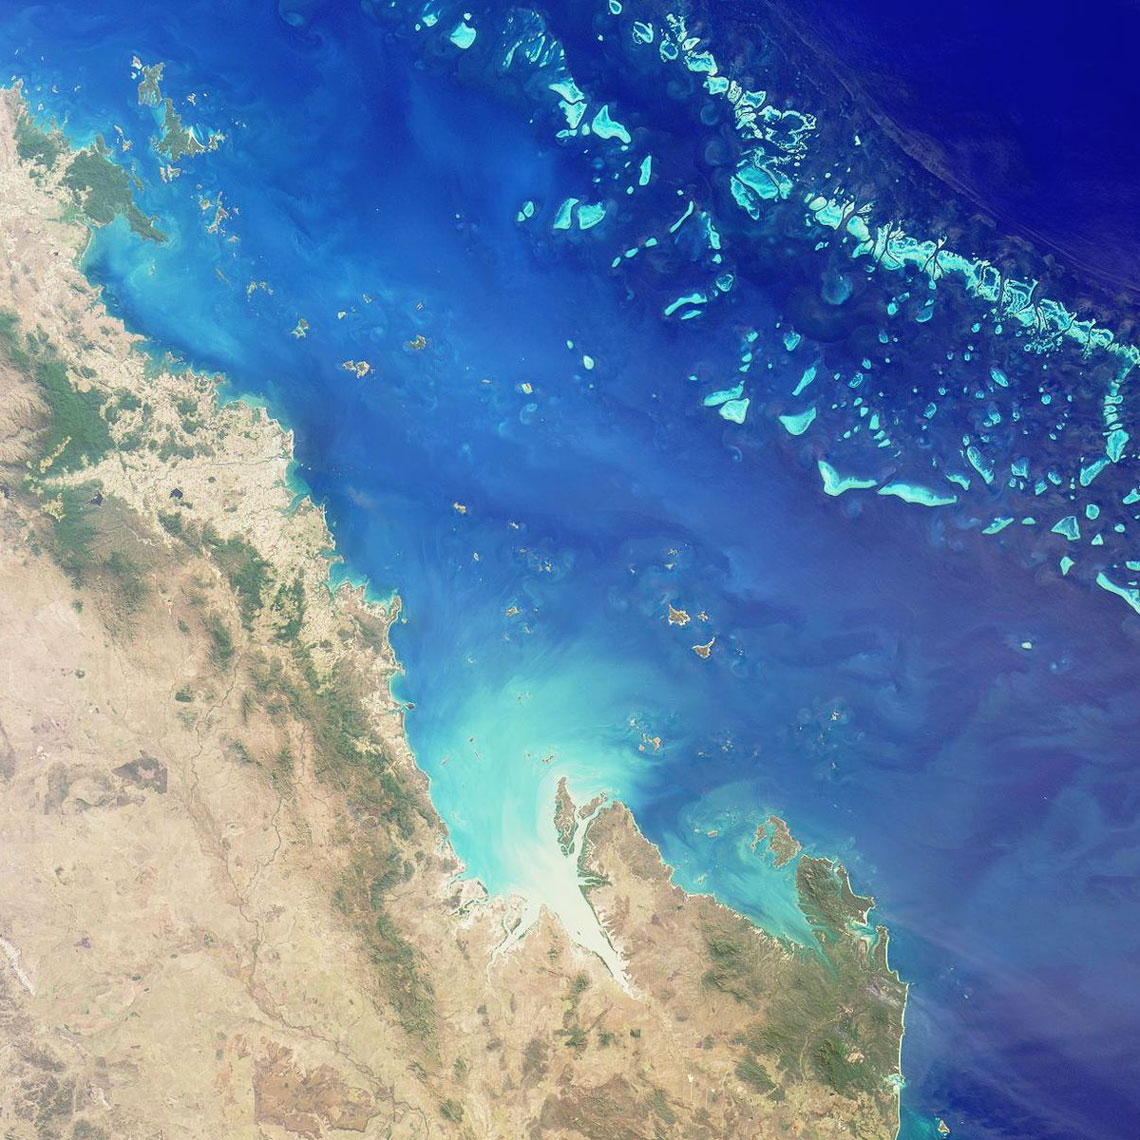 A Nagy-korallzátony a világ legnagyobb korallzátonya, amely a Csendes-óceánon található. Több mint 2 egyedi korallzátony és 900 sziget található a Korall-tengerben. A Nagy Korallzátony Ausztrália északkeleti partja mentén húzódik 900 km hosszan, és körülbelül 2 négyzetkilométernyi területet foglal el. A Nagy-korallzátony a Föld legnagyobb élőlények alkotta természeti objektuma – az űrből is látható.